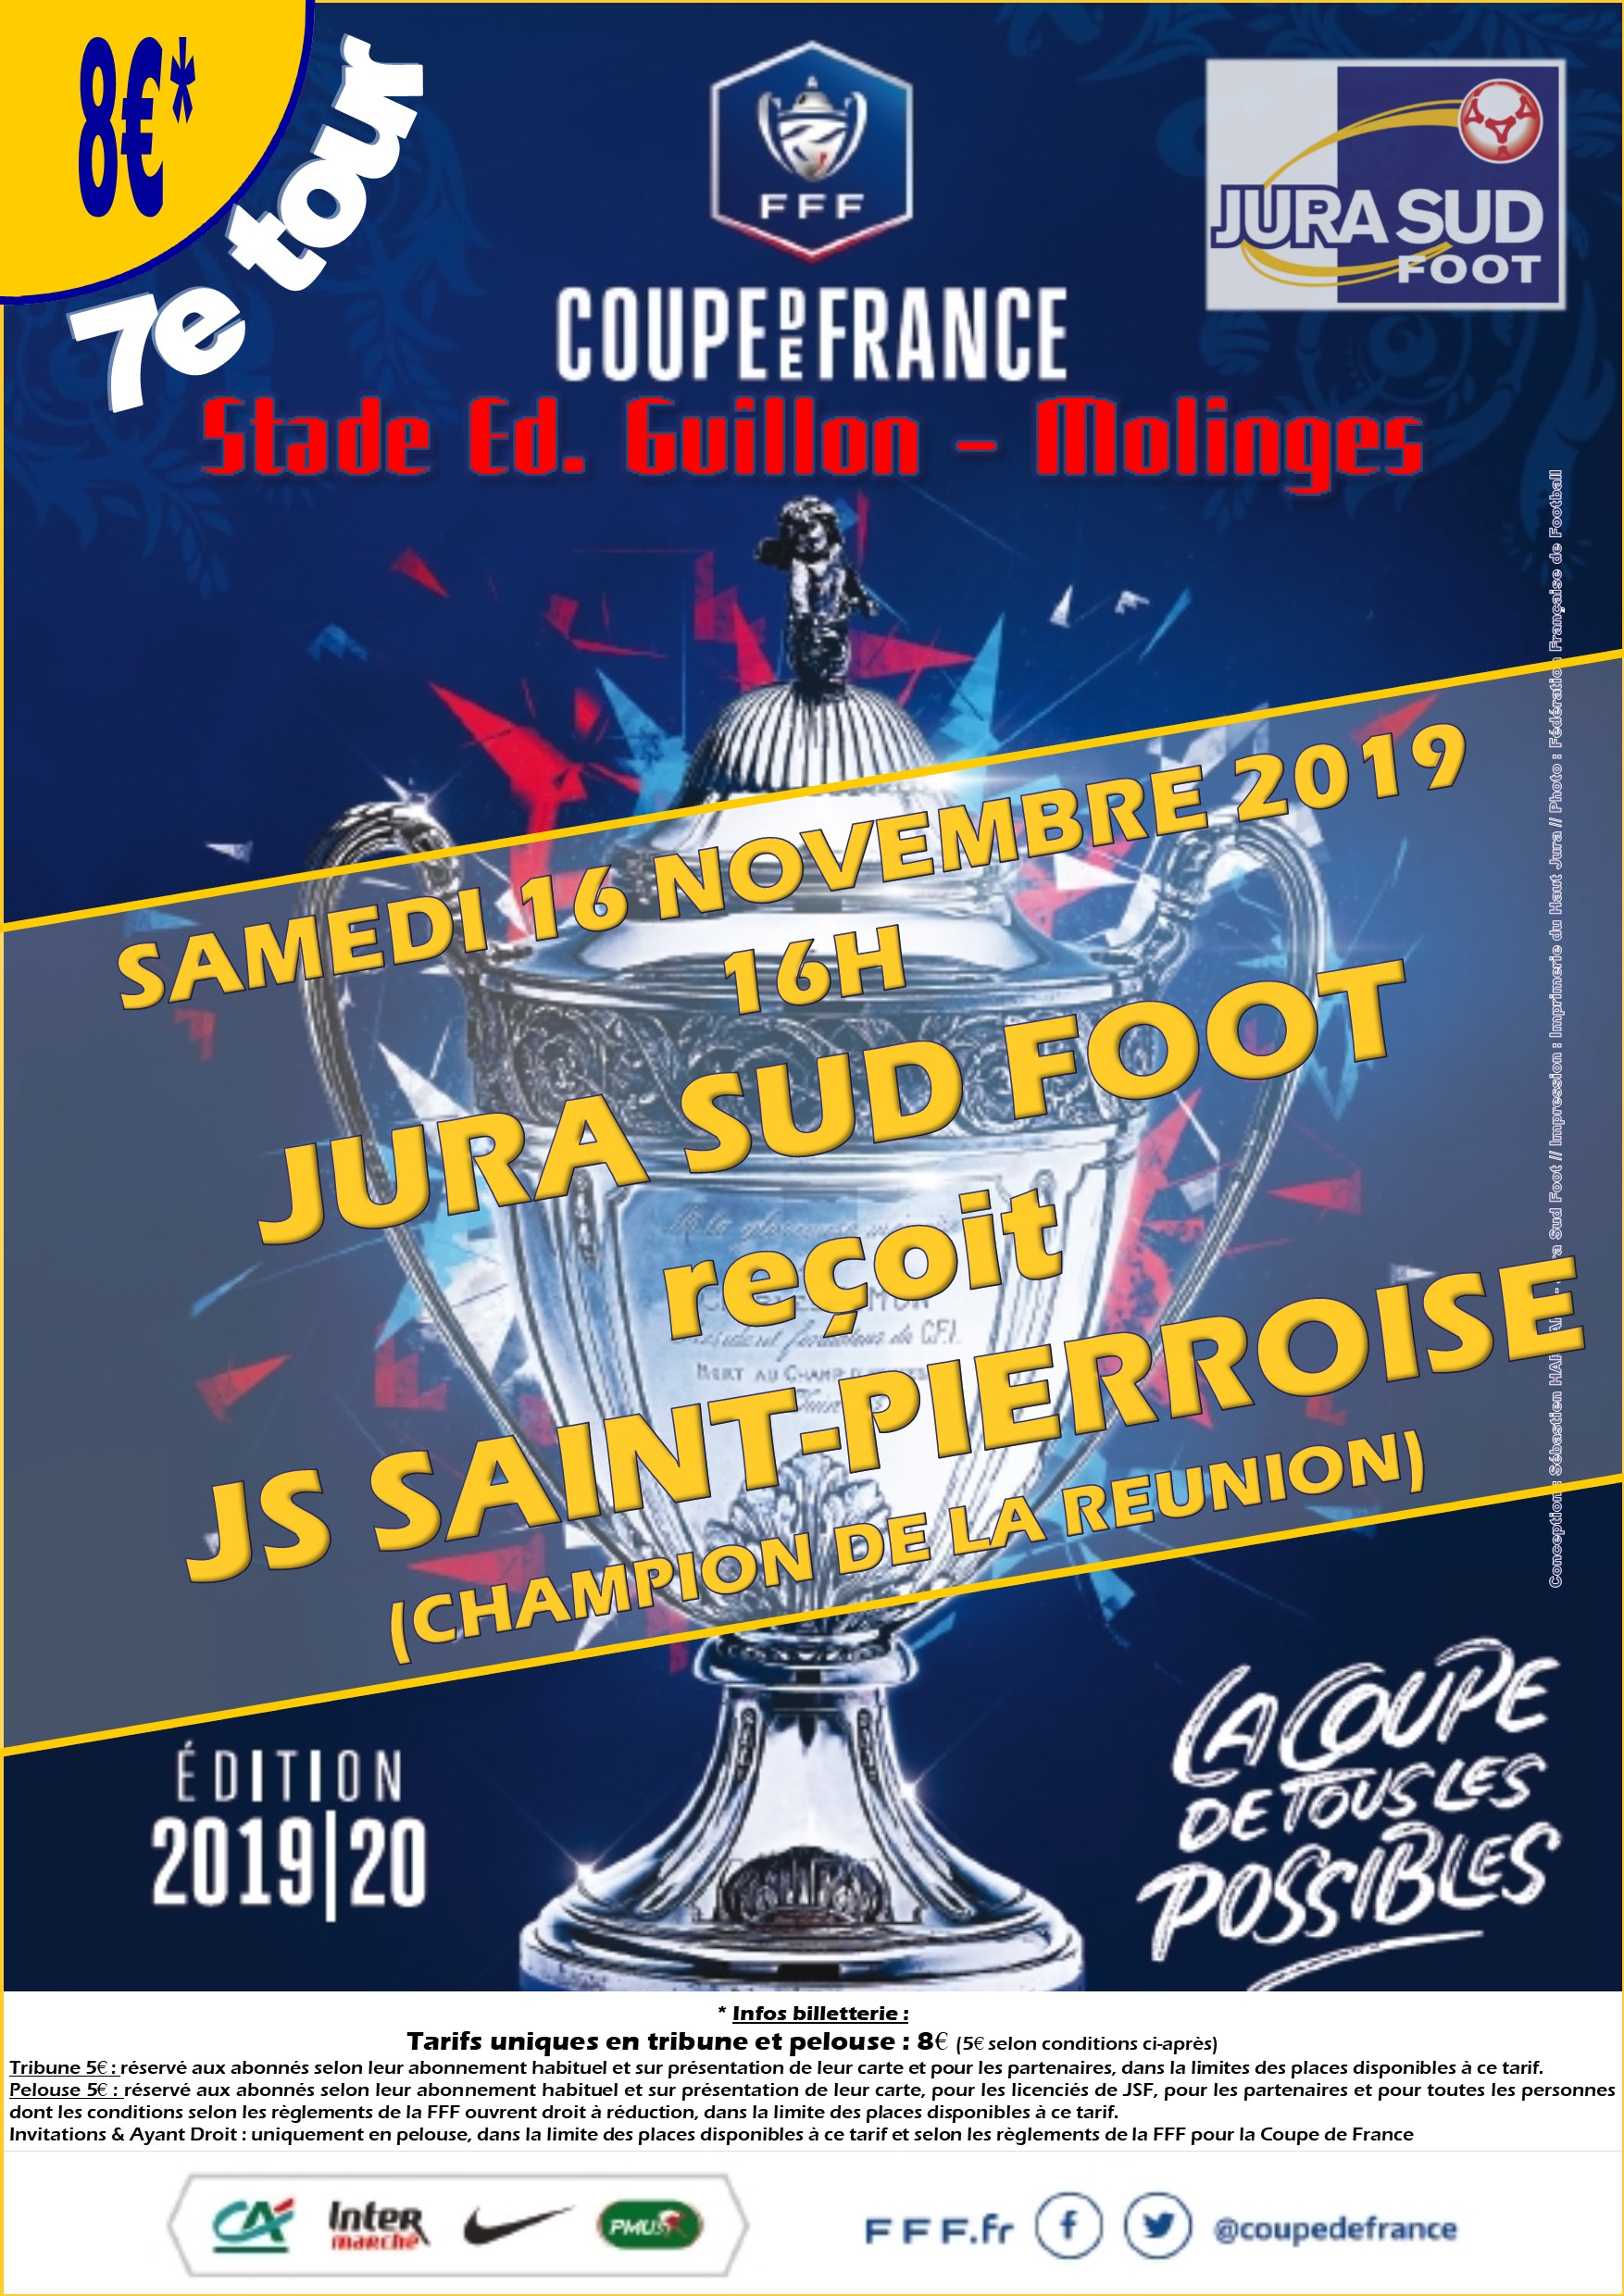 20191116 JSF ST PIERRE V2 MOLINGES